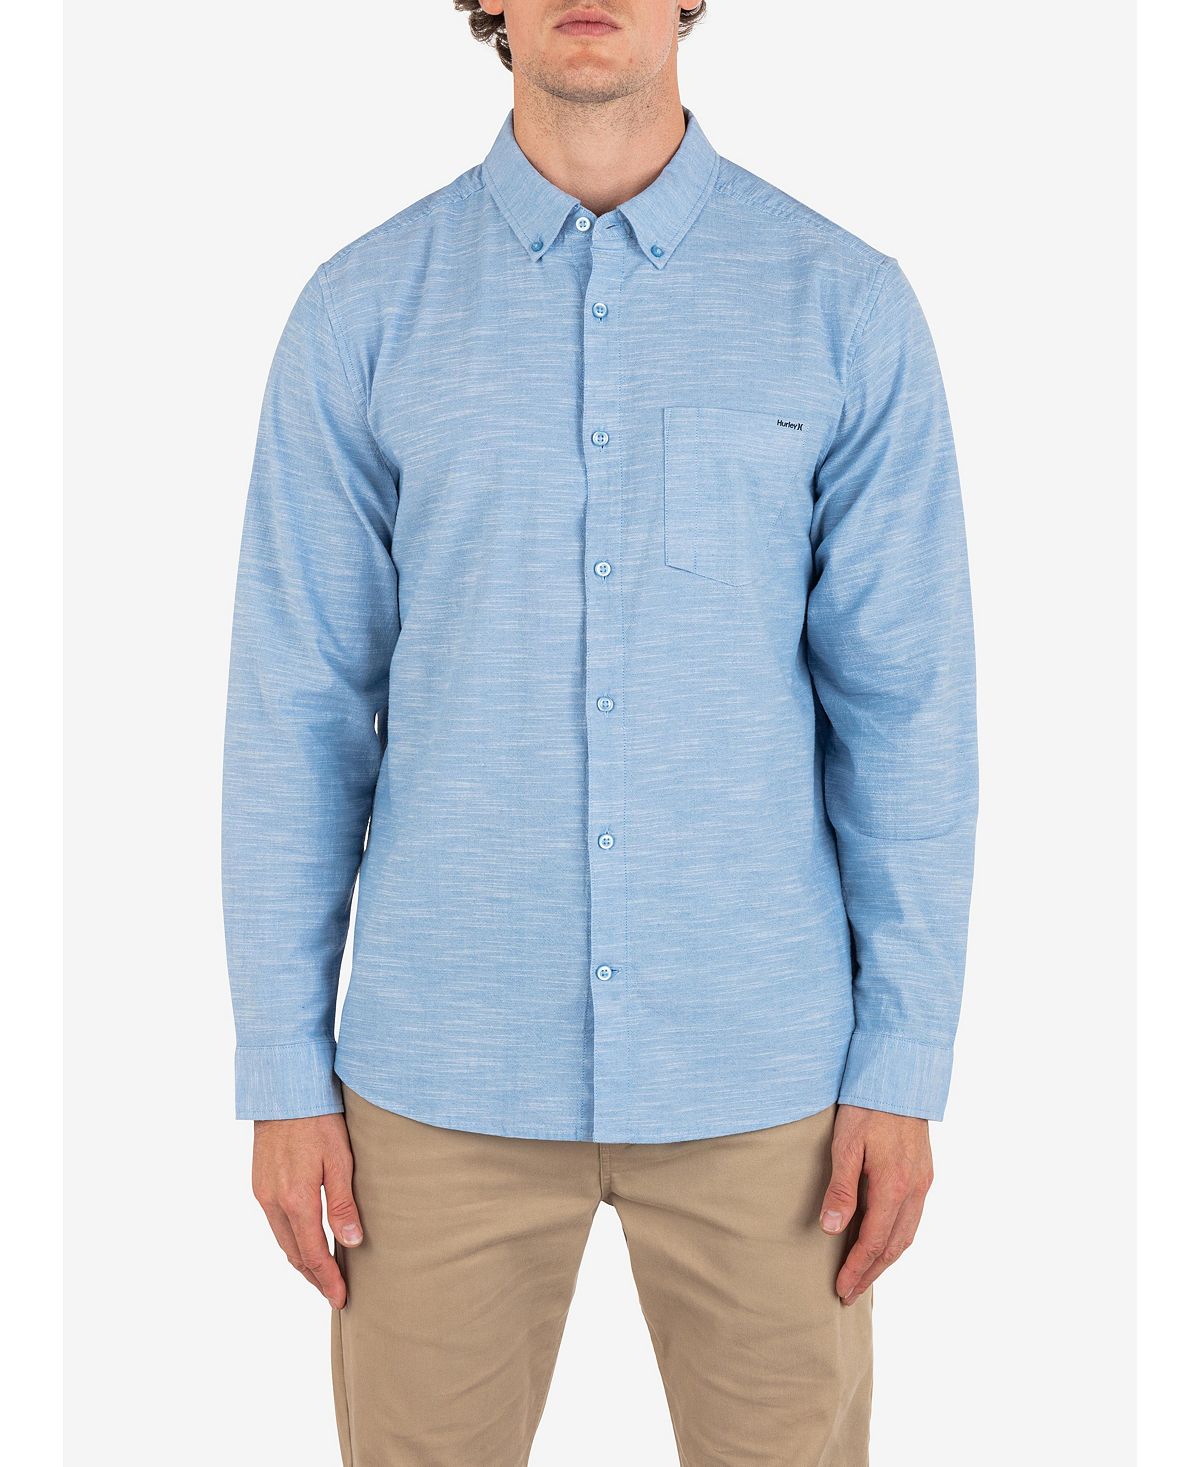 Мужская рубашка OAO стрейч с длинным рукавом Hurley цена и фото